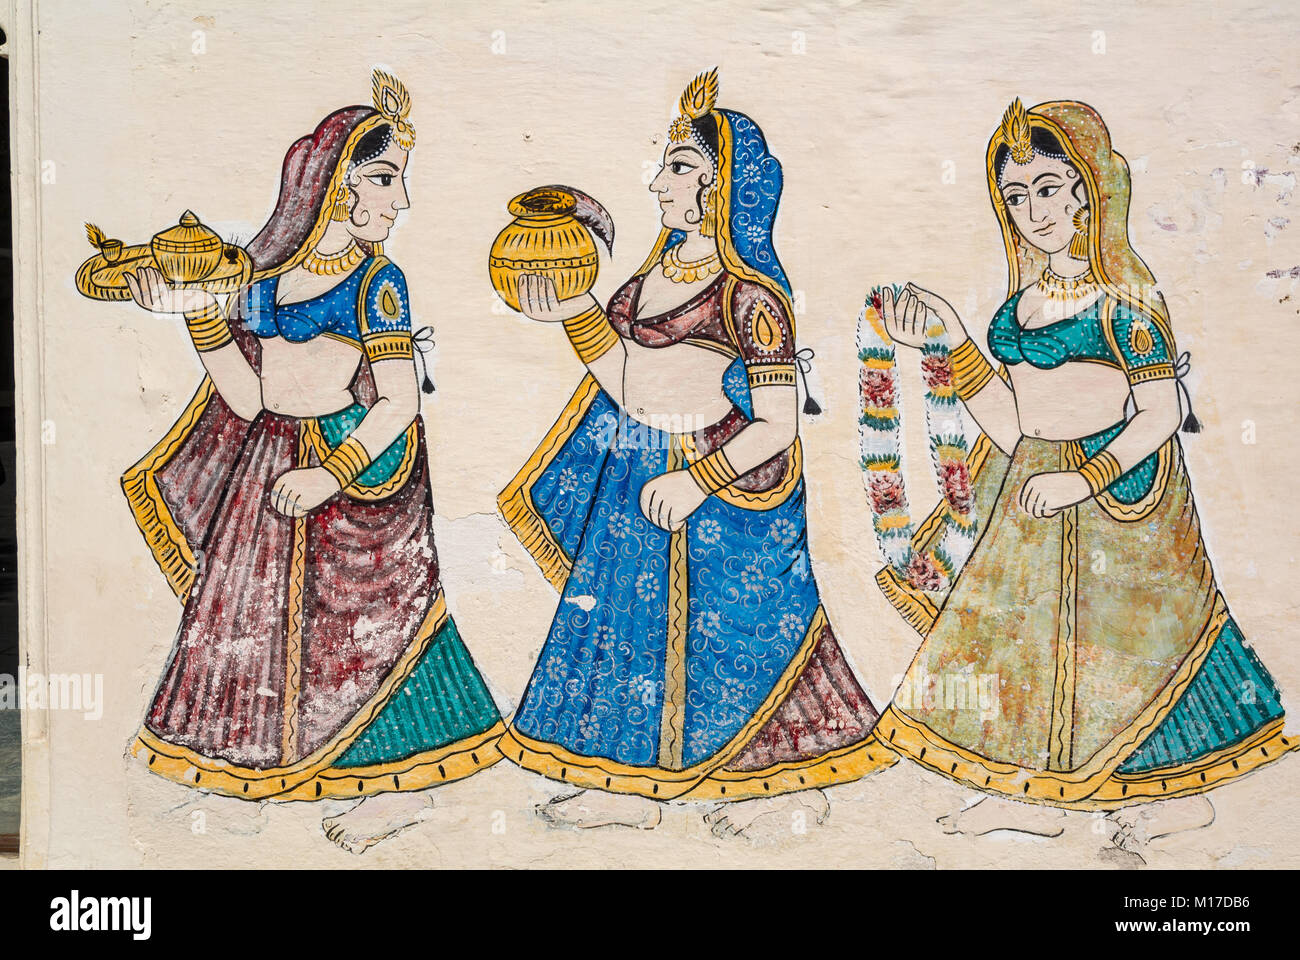 la pintura de la pared de las mujeres indias de la época mughal